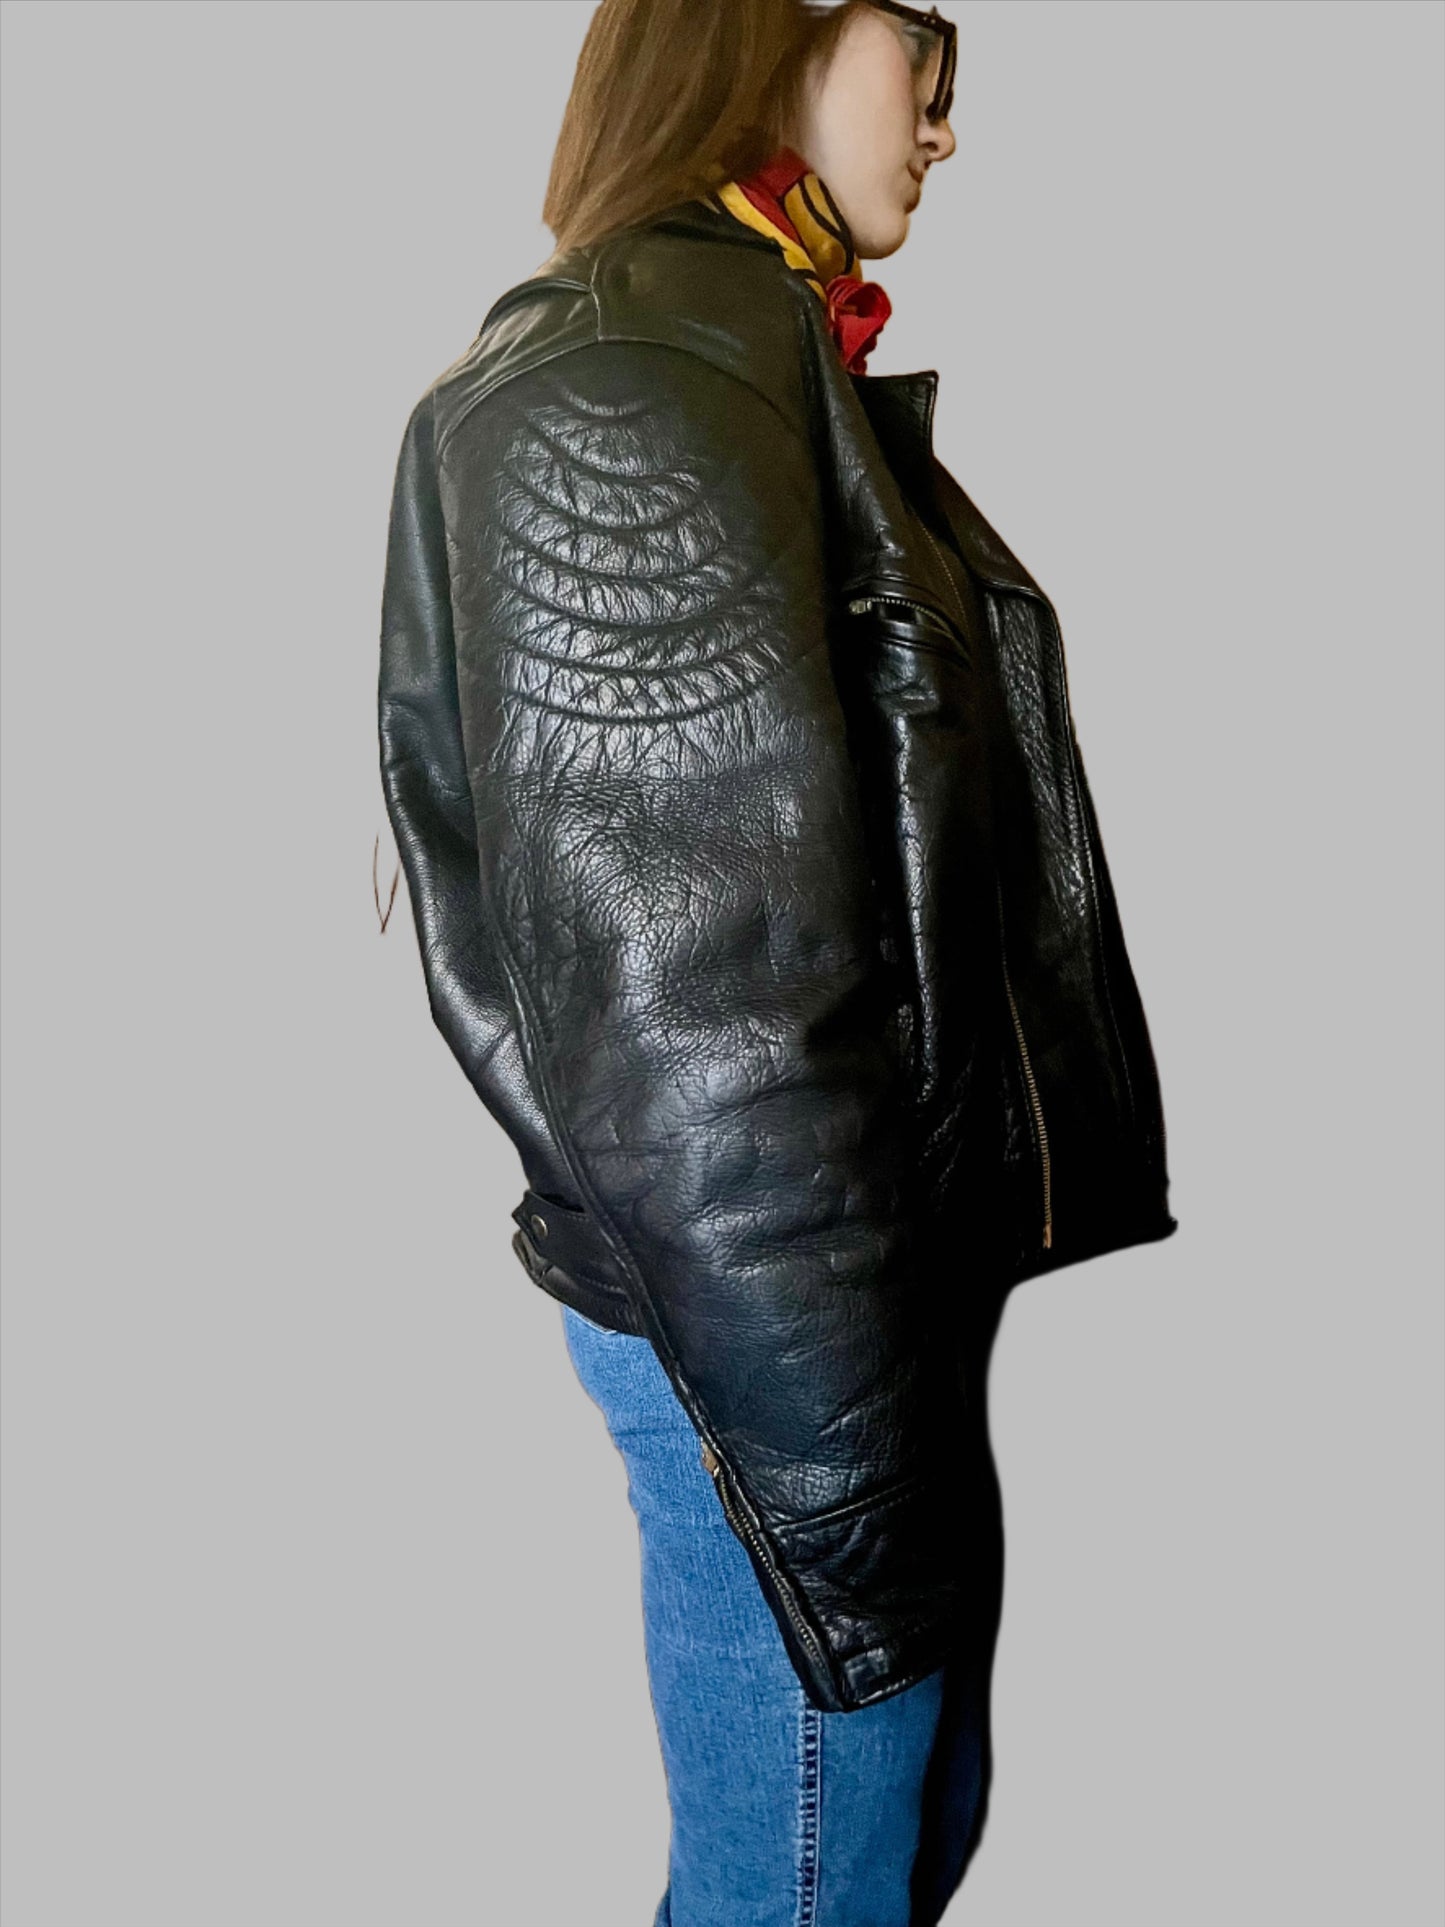 Vintage 90s Oversized Biker Leather Jacket in Black